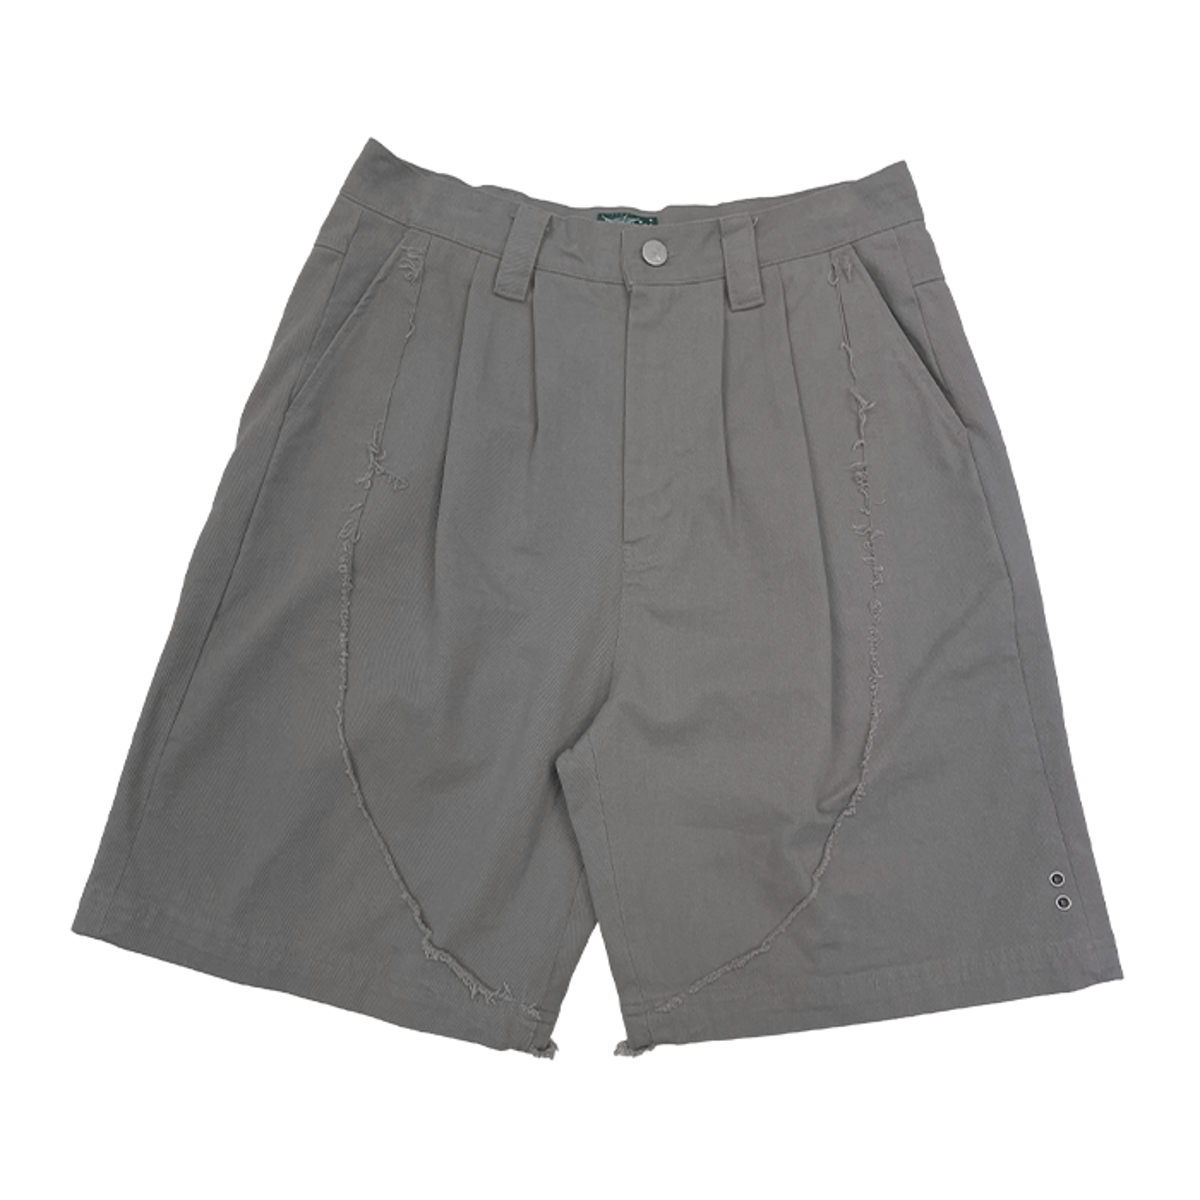 TCM half chino short pants (grey)